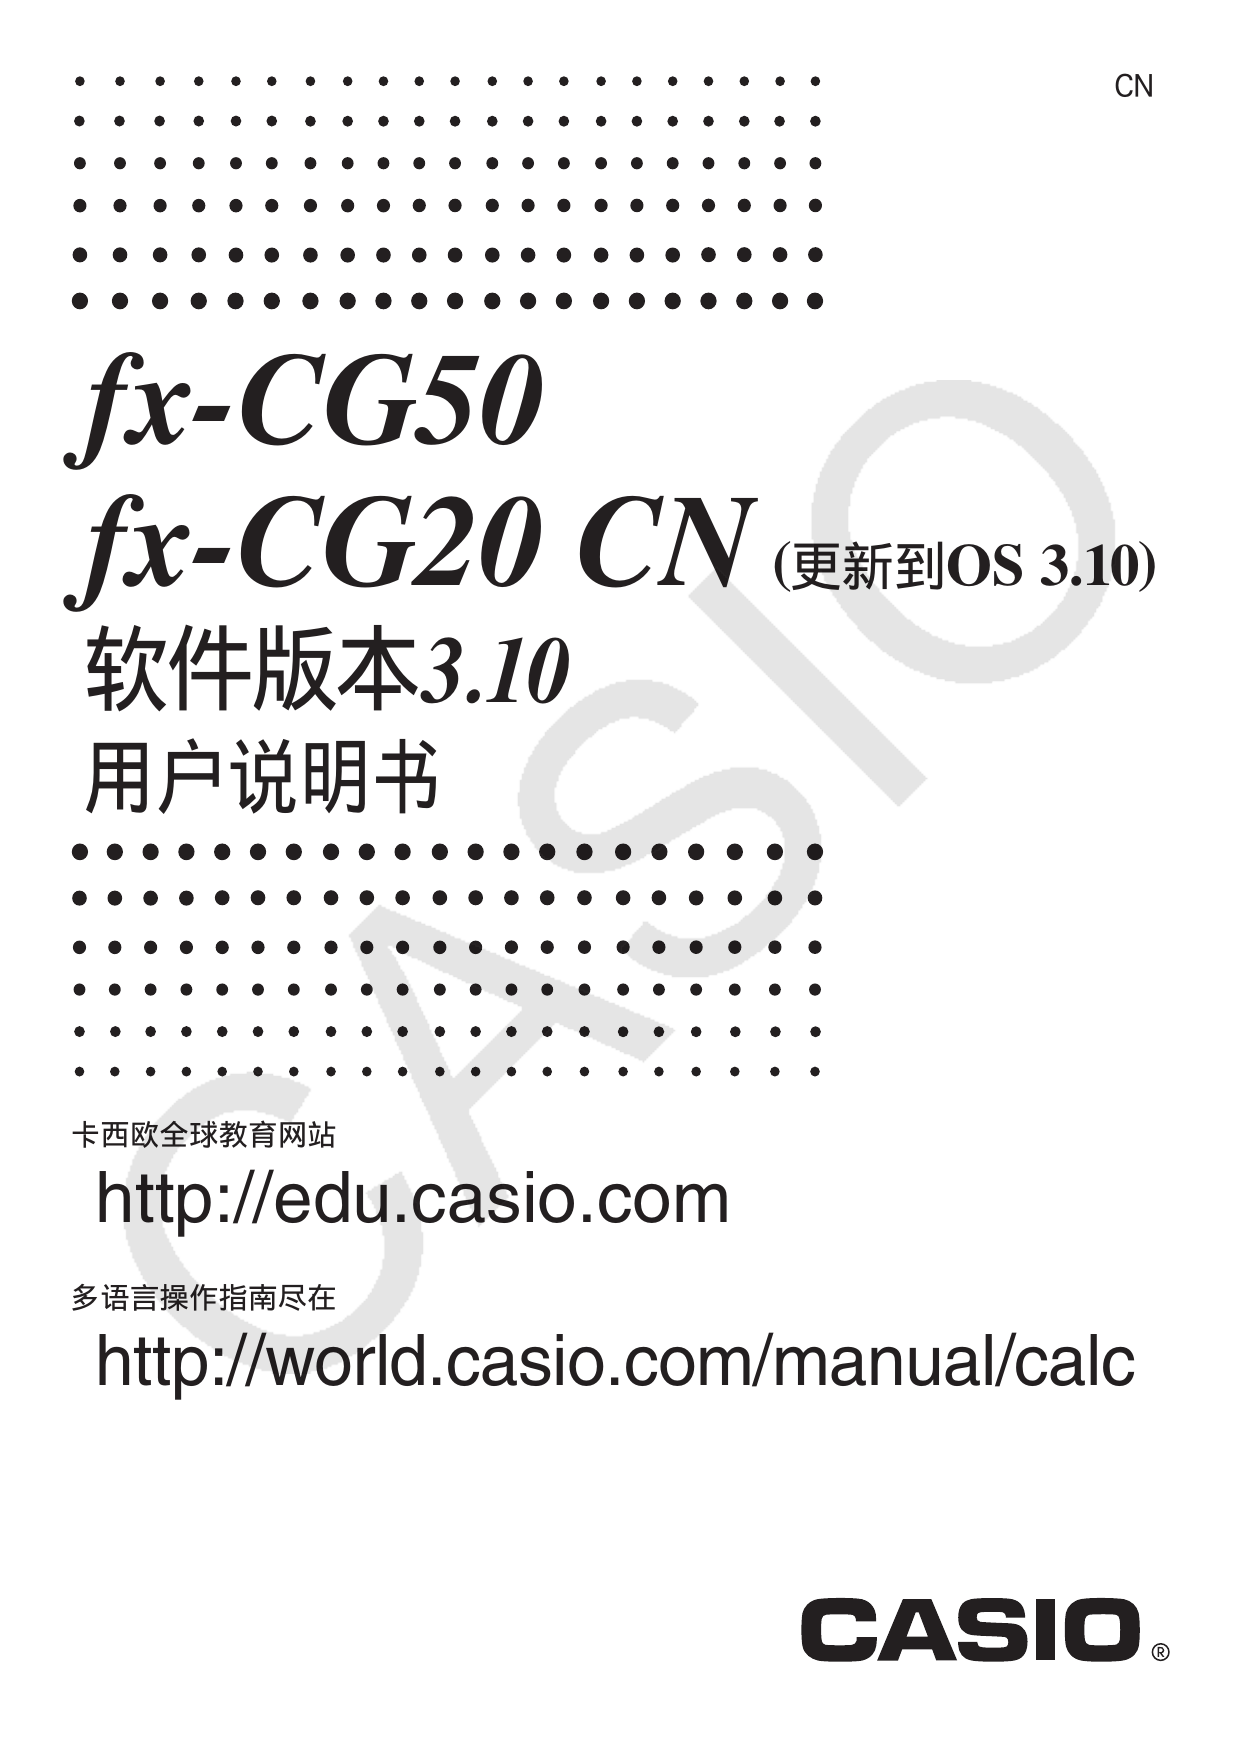 Casio Fx Cg Cn User Manual Manualzz